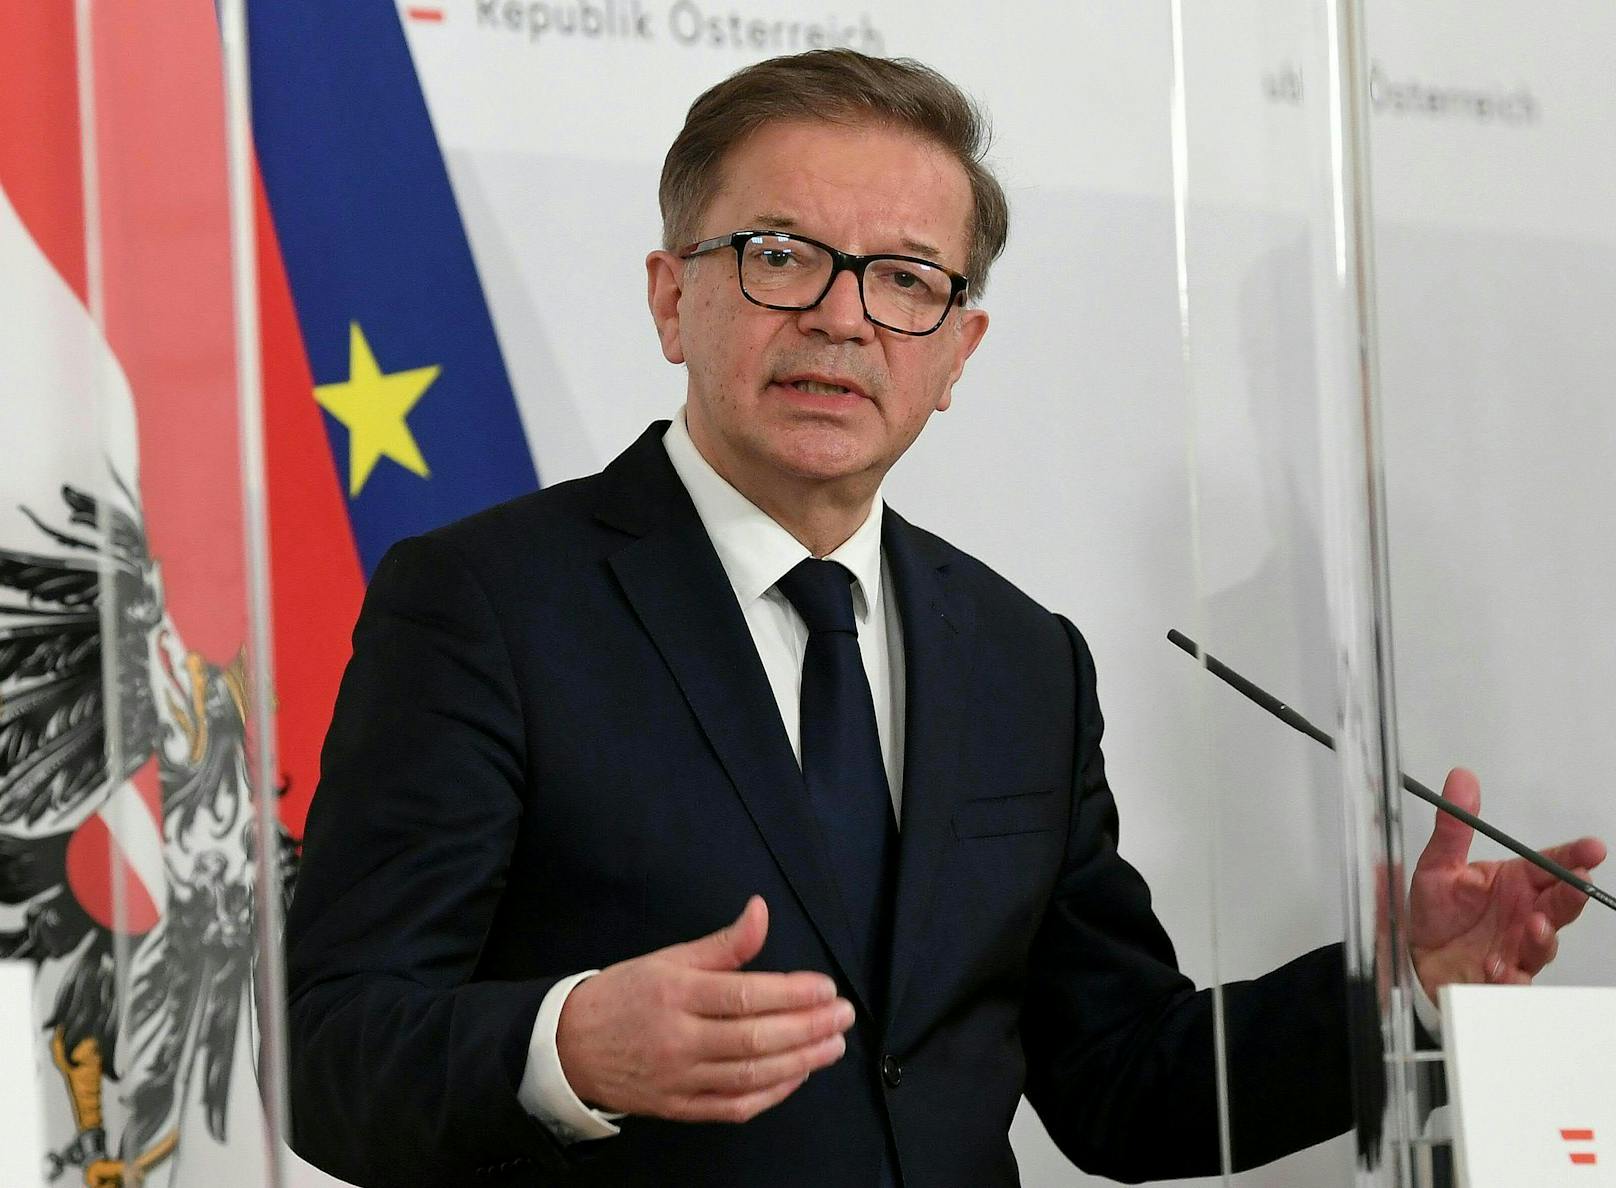 Gesundheitsminister Rudolf Anschober (Grüne) am Montag, 1. März 2021, während einer Pressekonferenz nach einem Corona-Gipfel im Bundeskanzleramt in Wien.